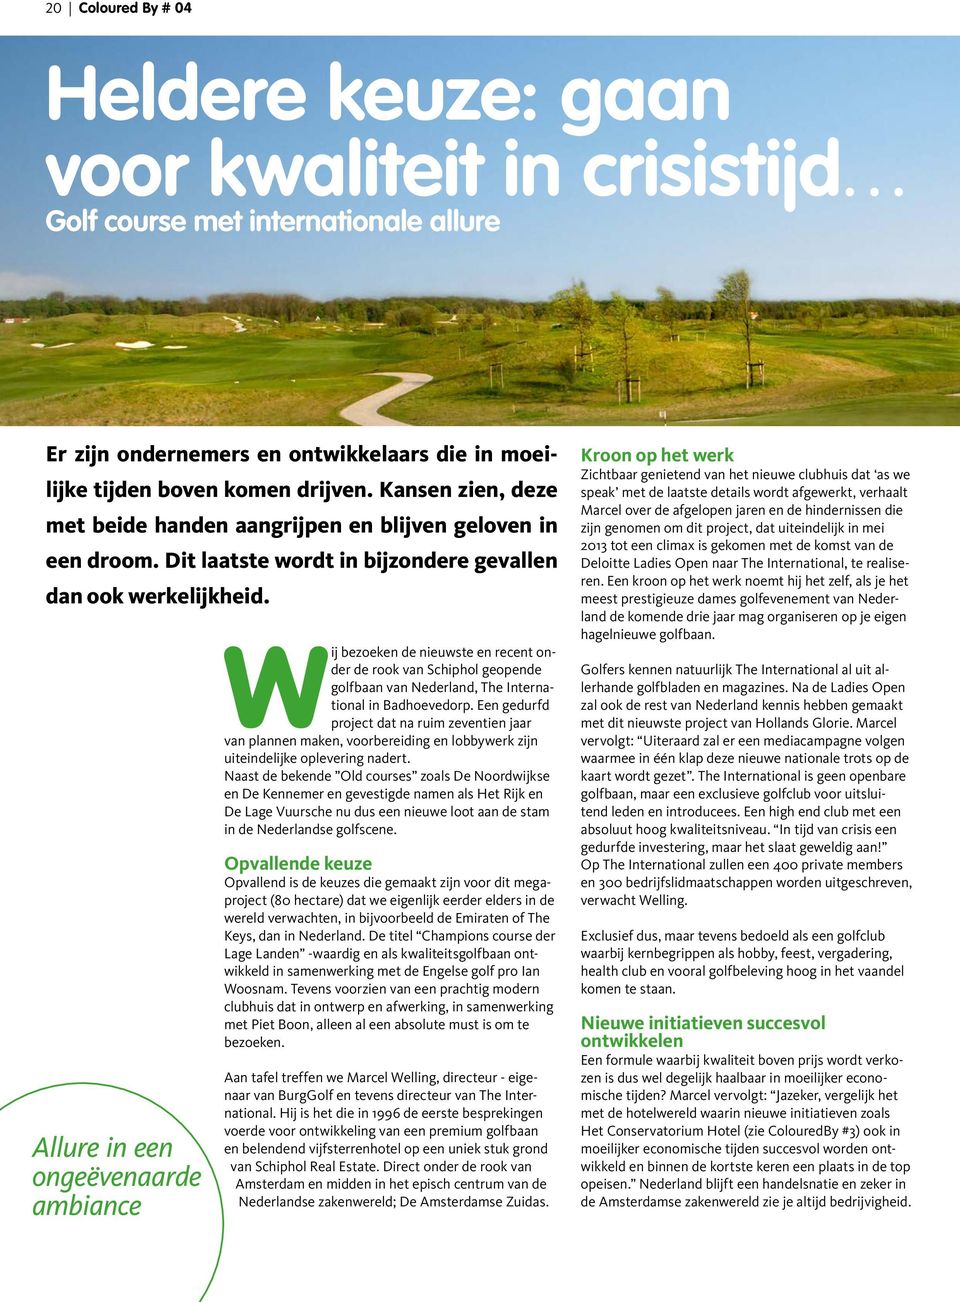 Allure in een ongeëvenaarde ambiance Wij bezoeken de nieuwste en recent onder de rook van Schiphol geopende golfbaan van Nederland, The International in Badhoevedorp.